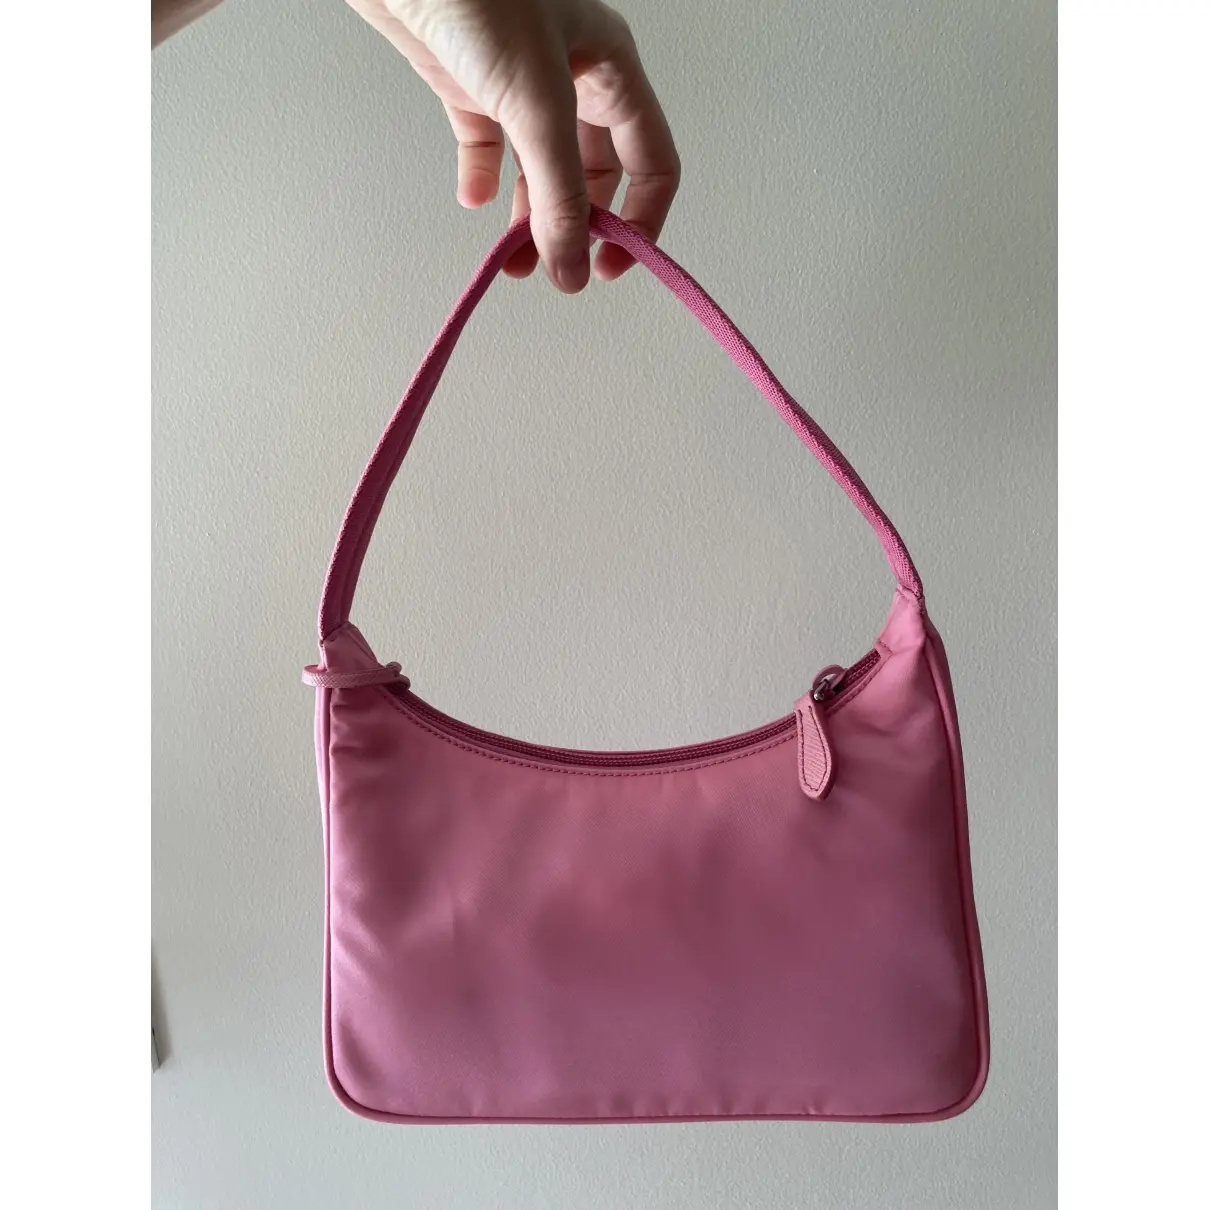 Buy Prada Re-edition cloth handbag online